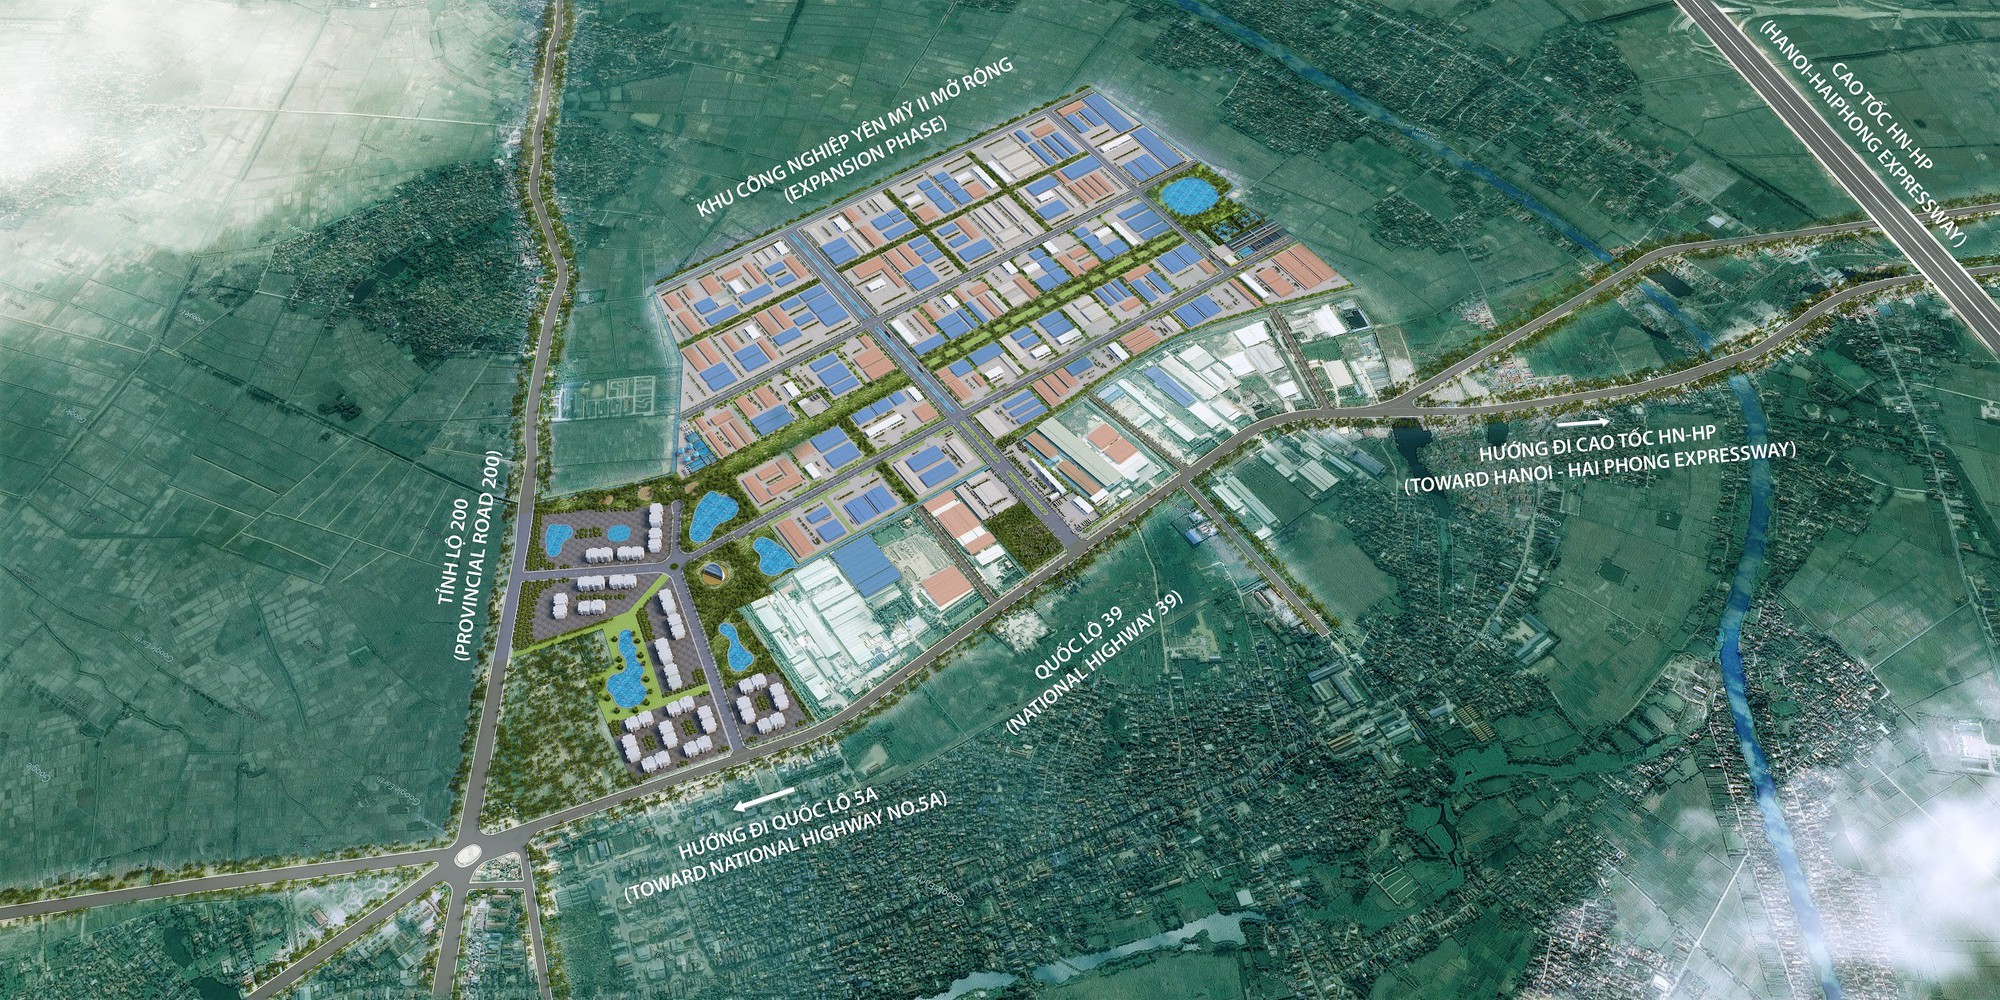 Vừa bị chất vấn vì kế hoạch mảng BĐS mờ nhạt, Hoà Phát nhận tin chấp thuận đầu tư dự án 2.600 tỷ ở Hưng Yên - Ảnh 1.